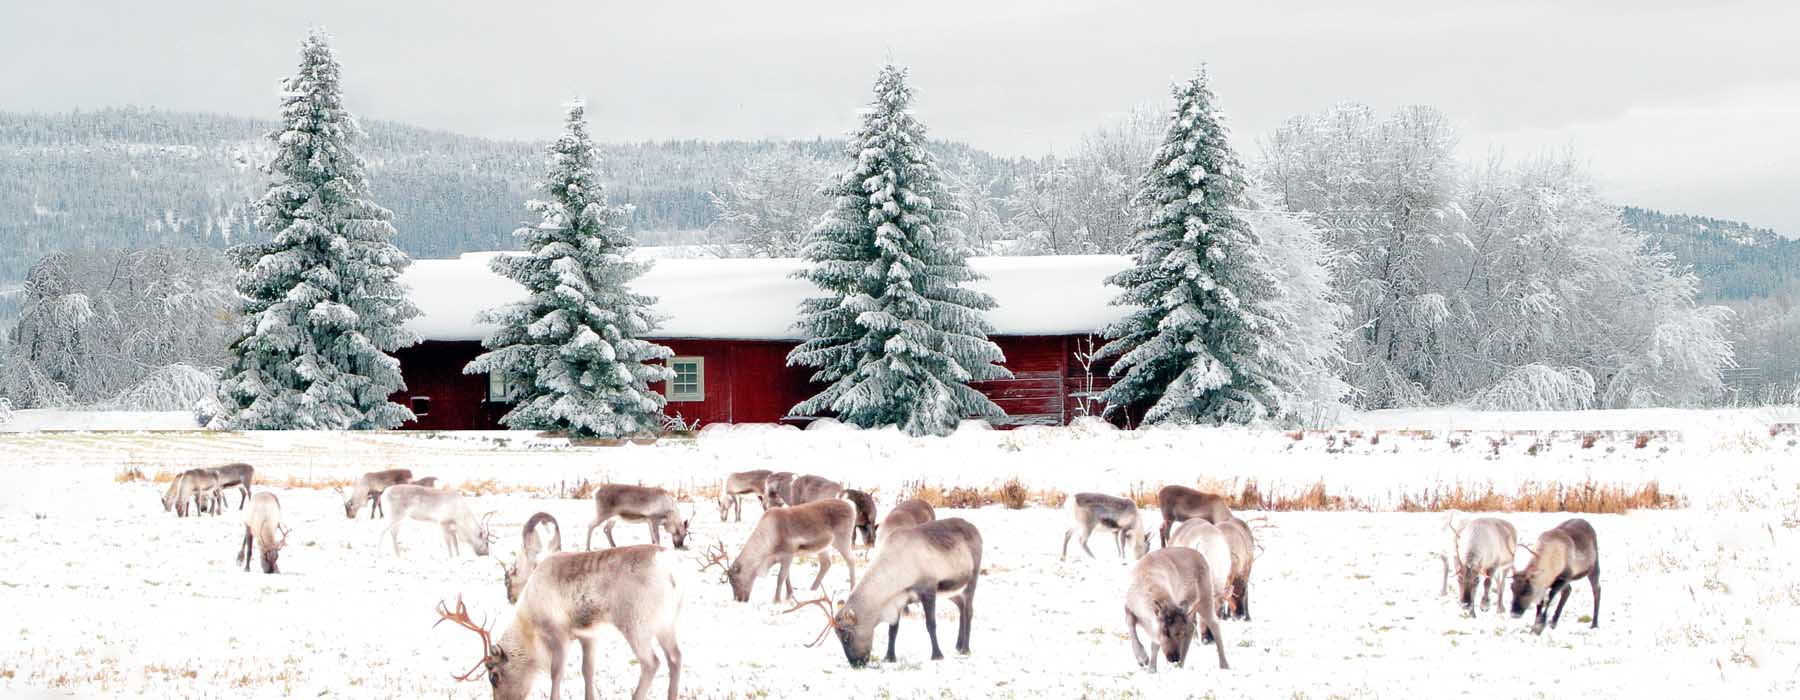 Finland<br class="hidden-md hidden-lg" /> Snow Holidays